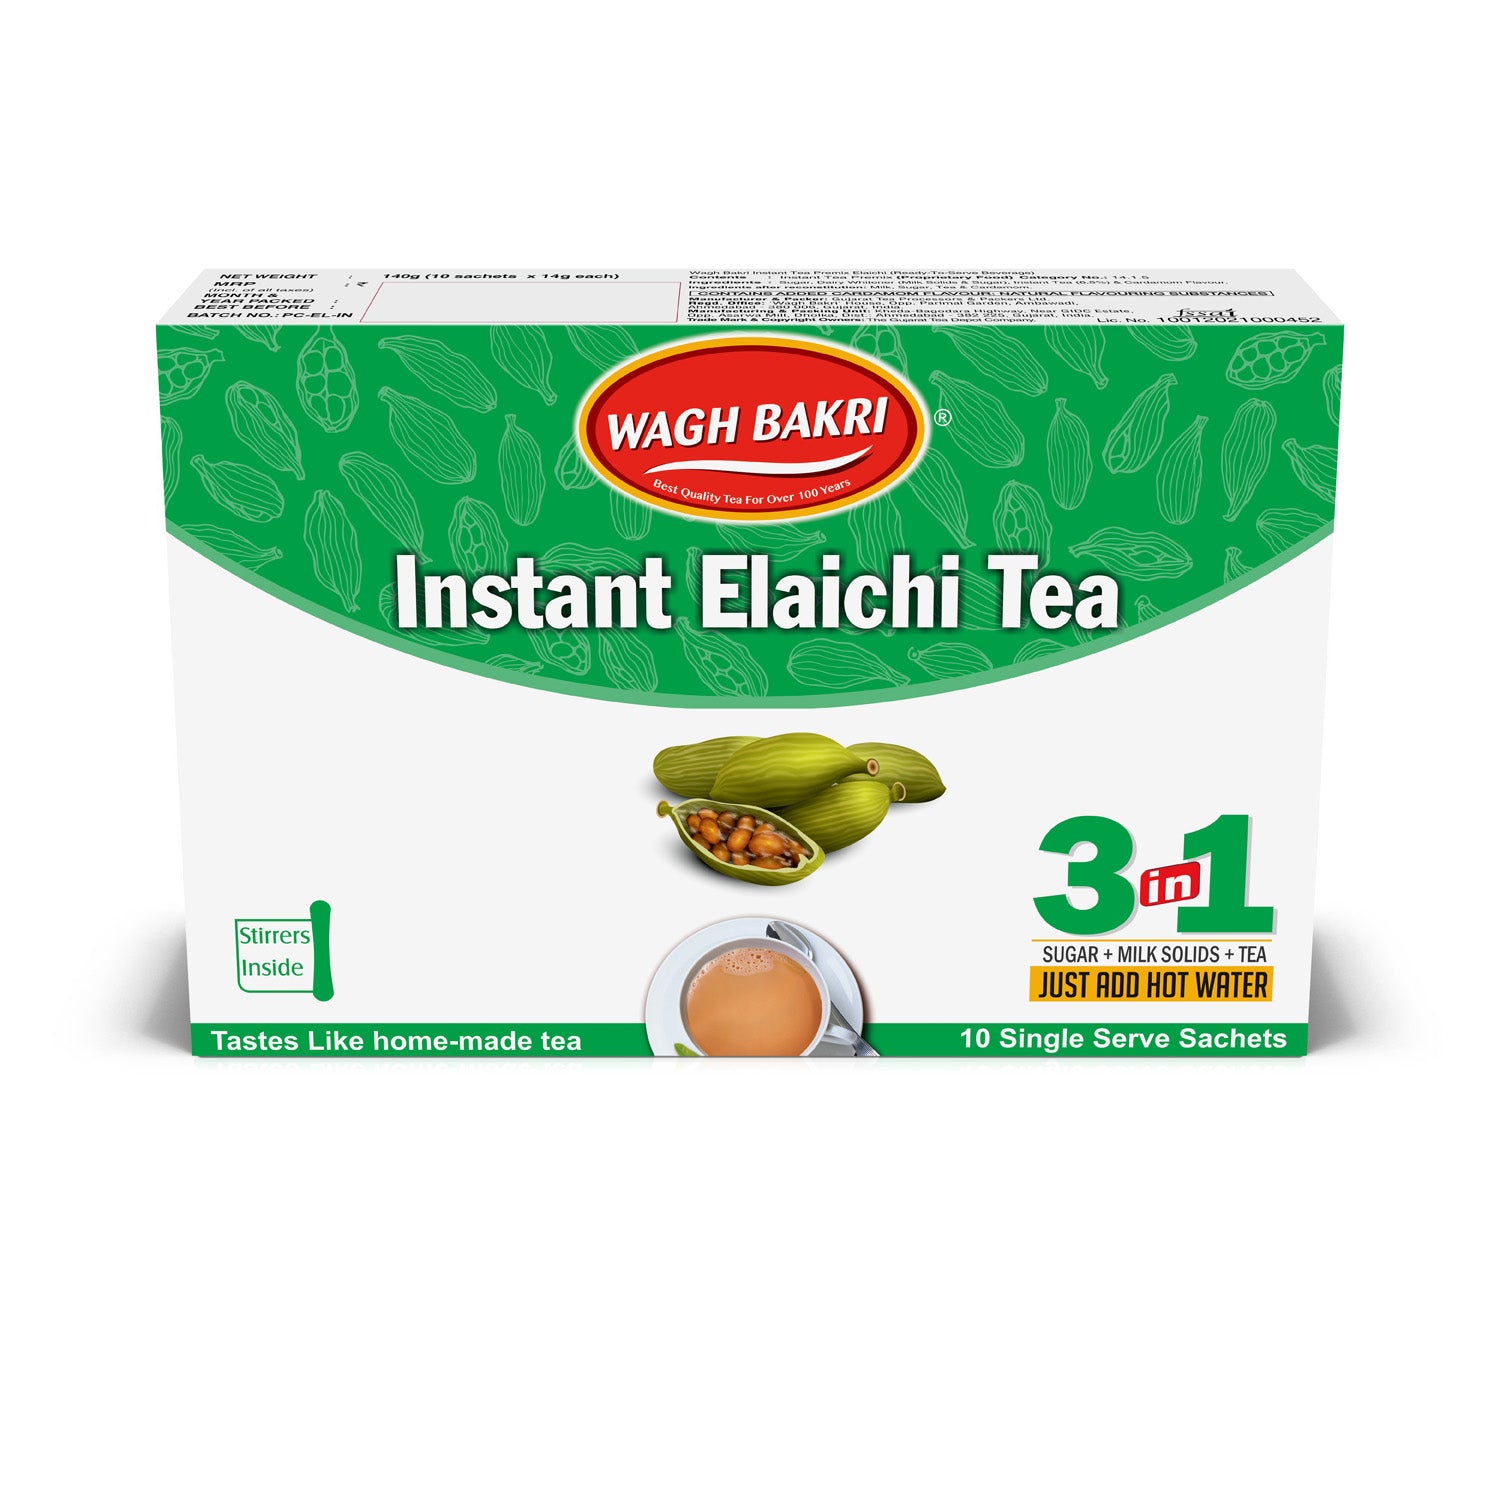 Buy Wagh Bakri Instant Tea - Ginger Pack of 2 & Get Wagh Bakri Instant Tea Elaichi Free